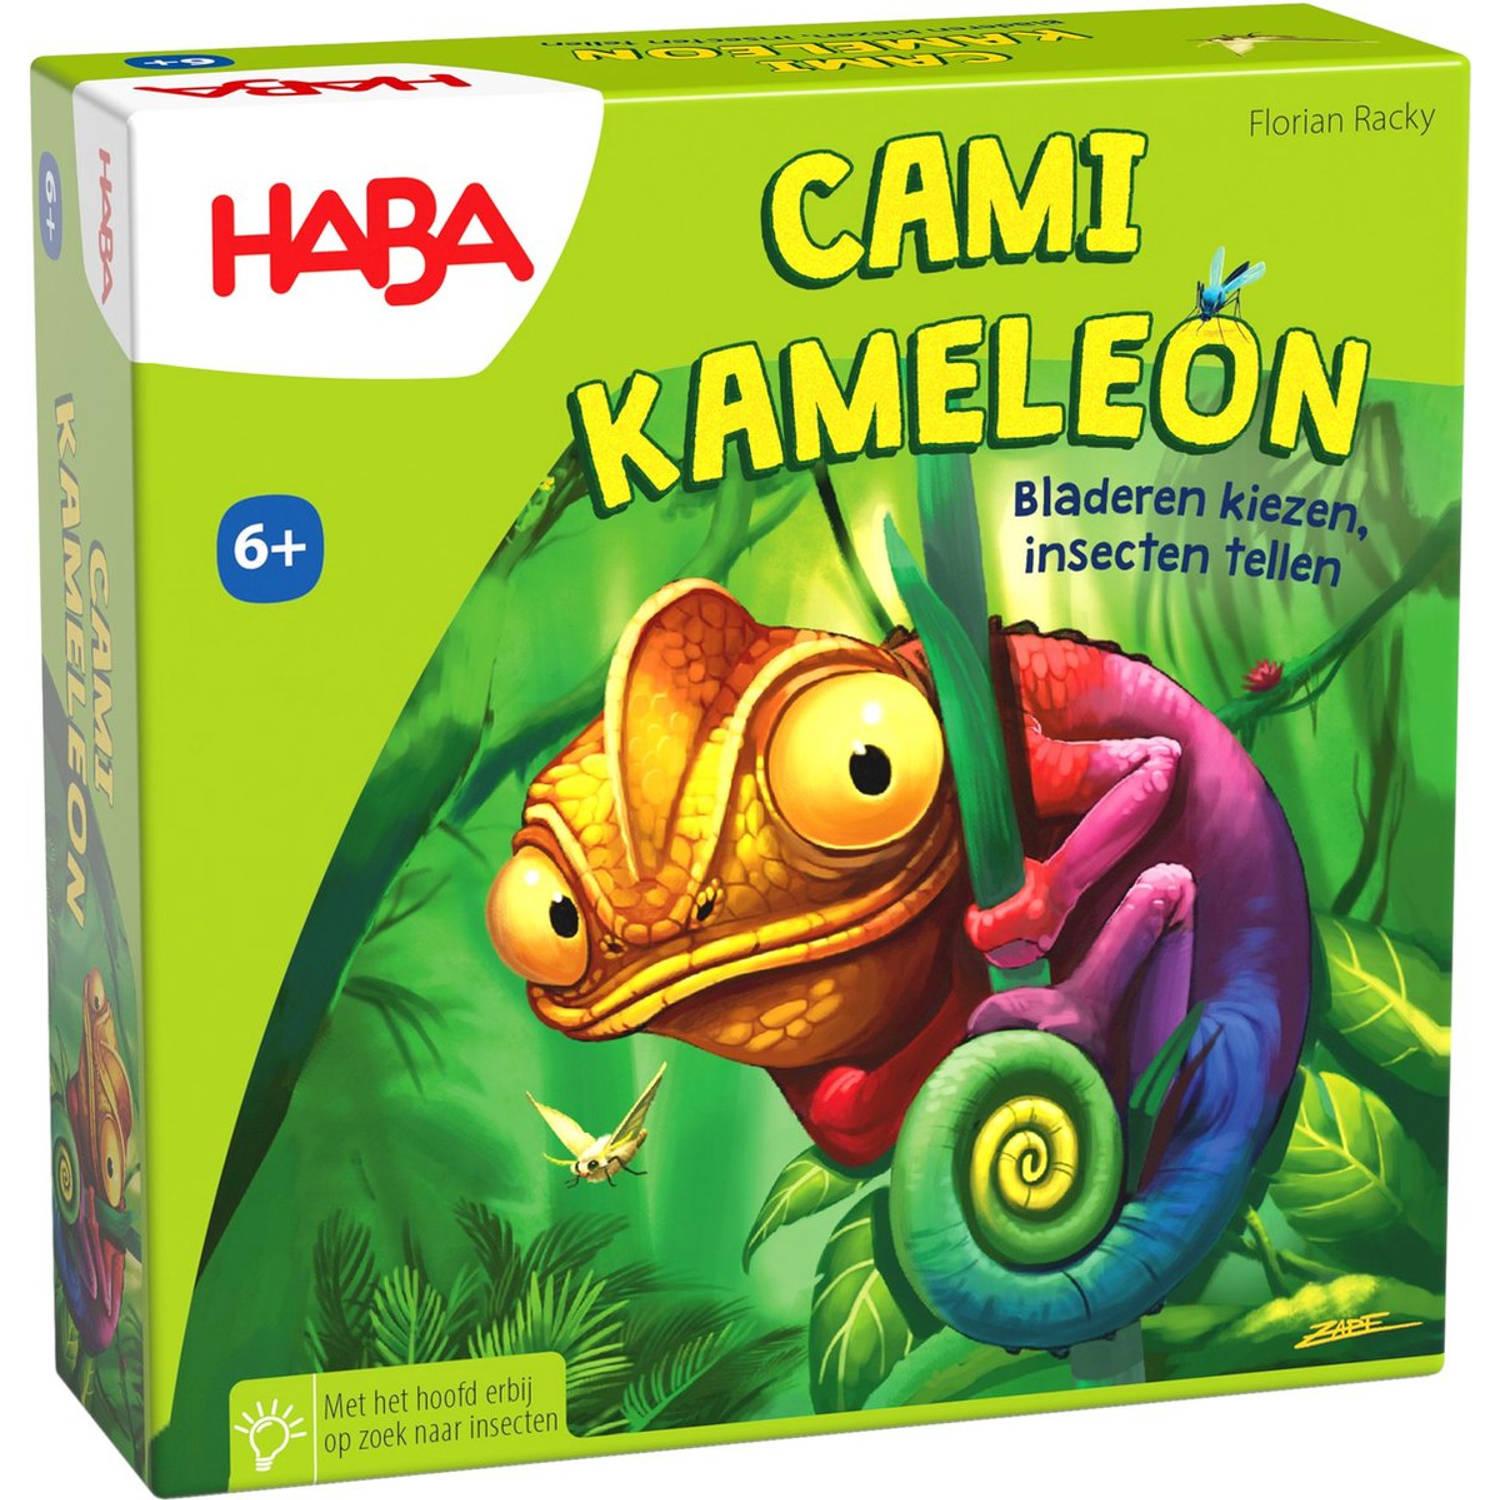 Haba Spel Cami Kameleon (Nederlands)